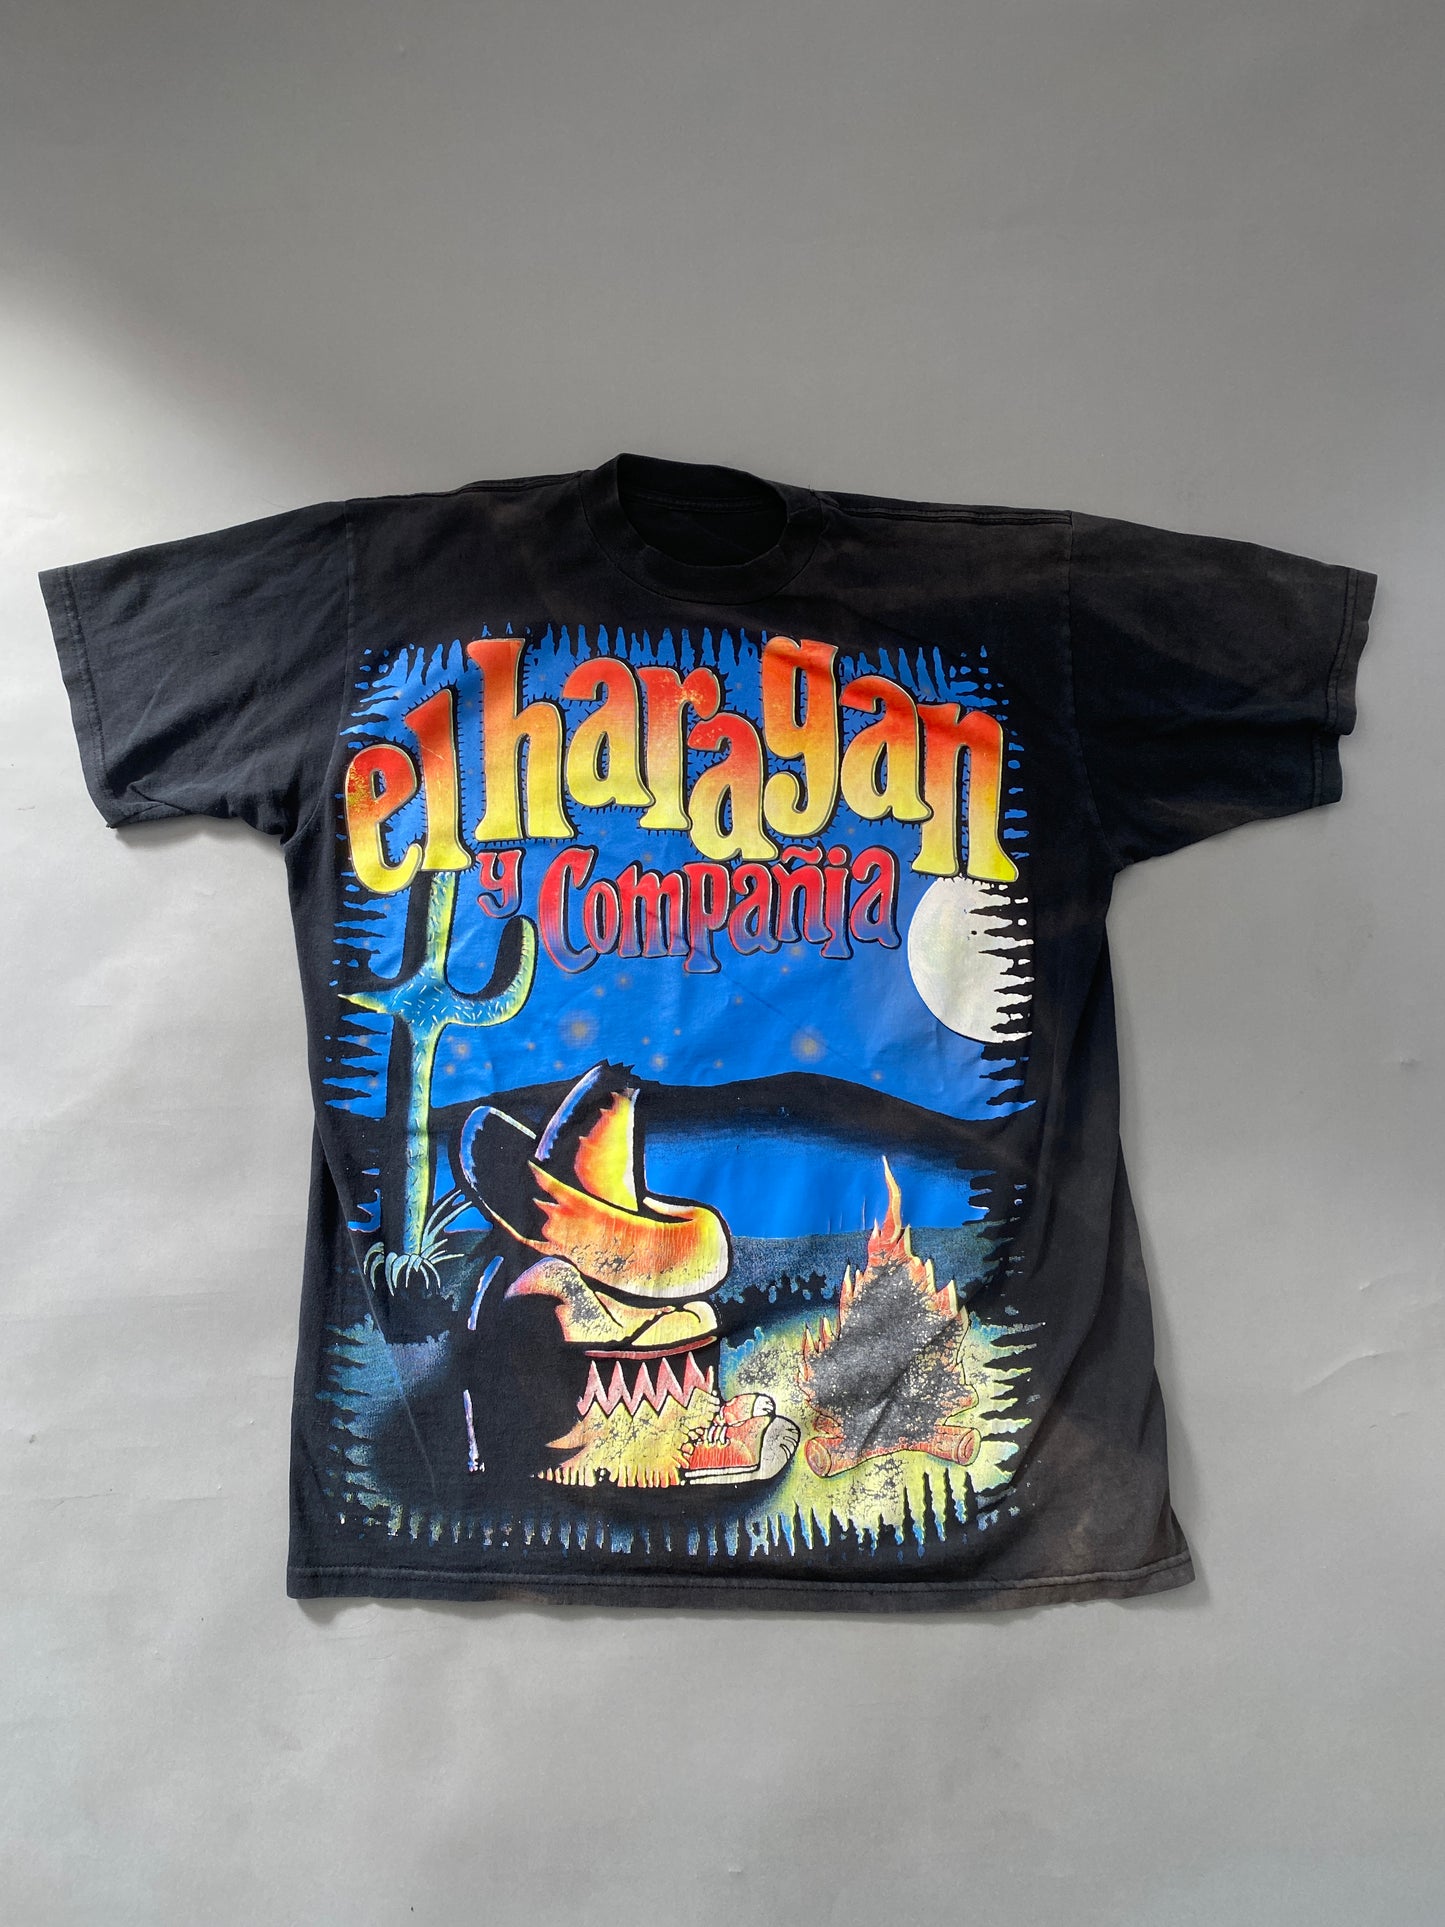 Haragan and Company Vintage T-shirt